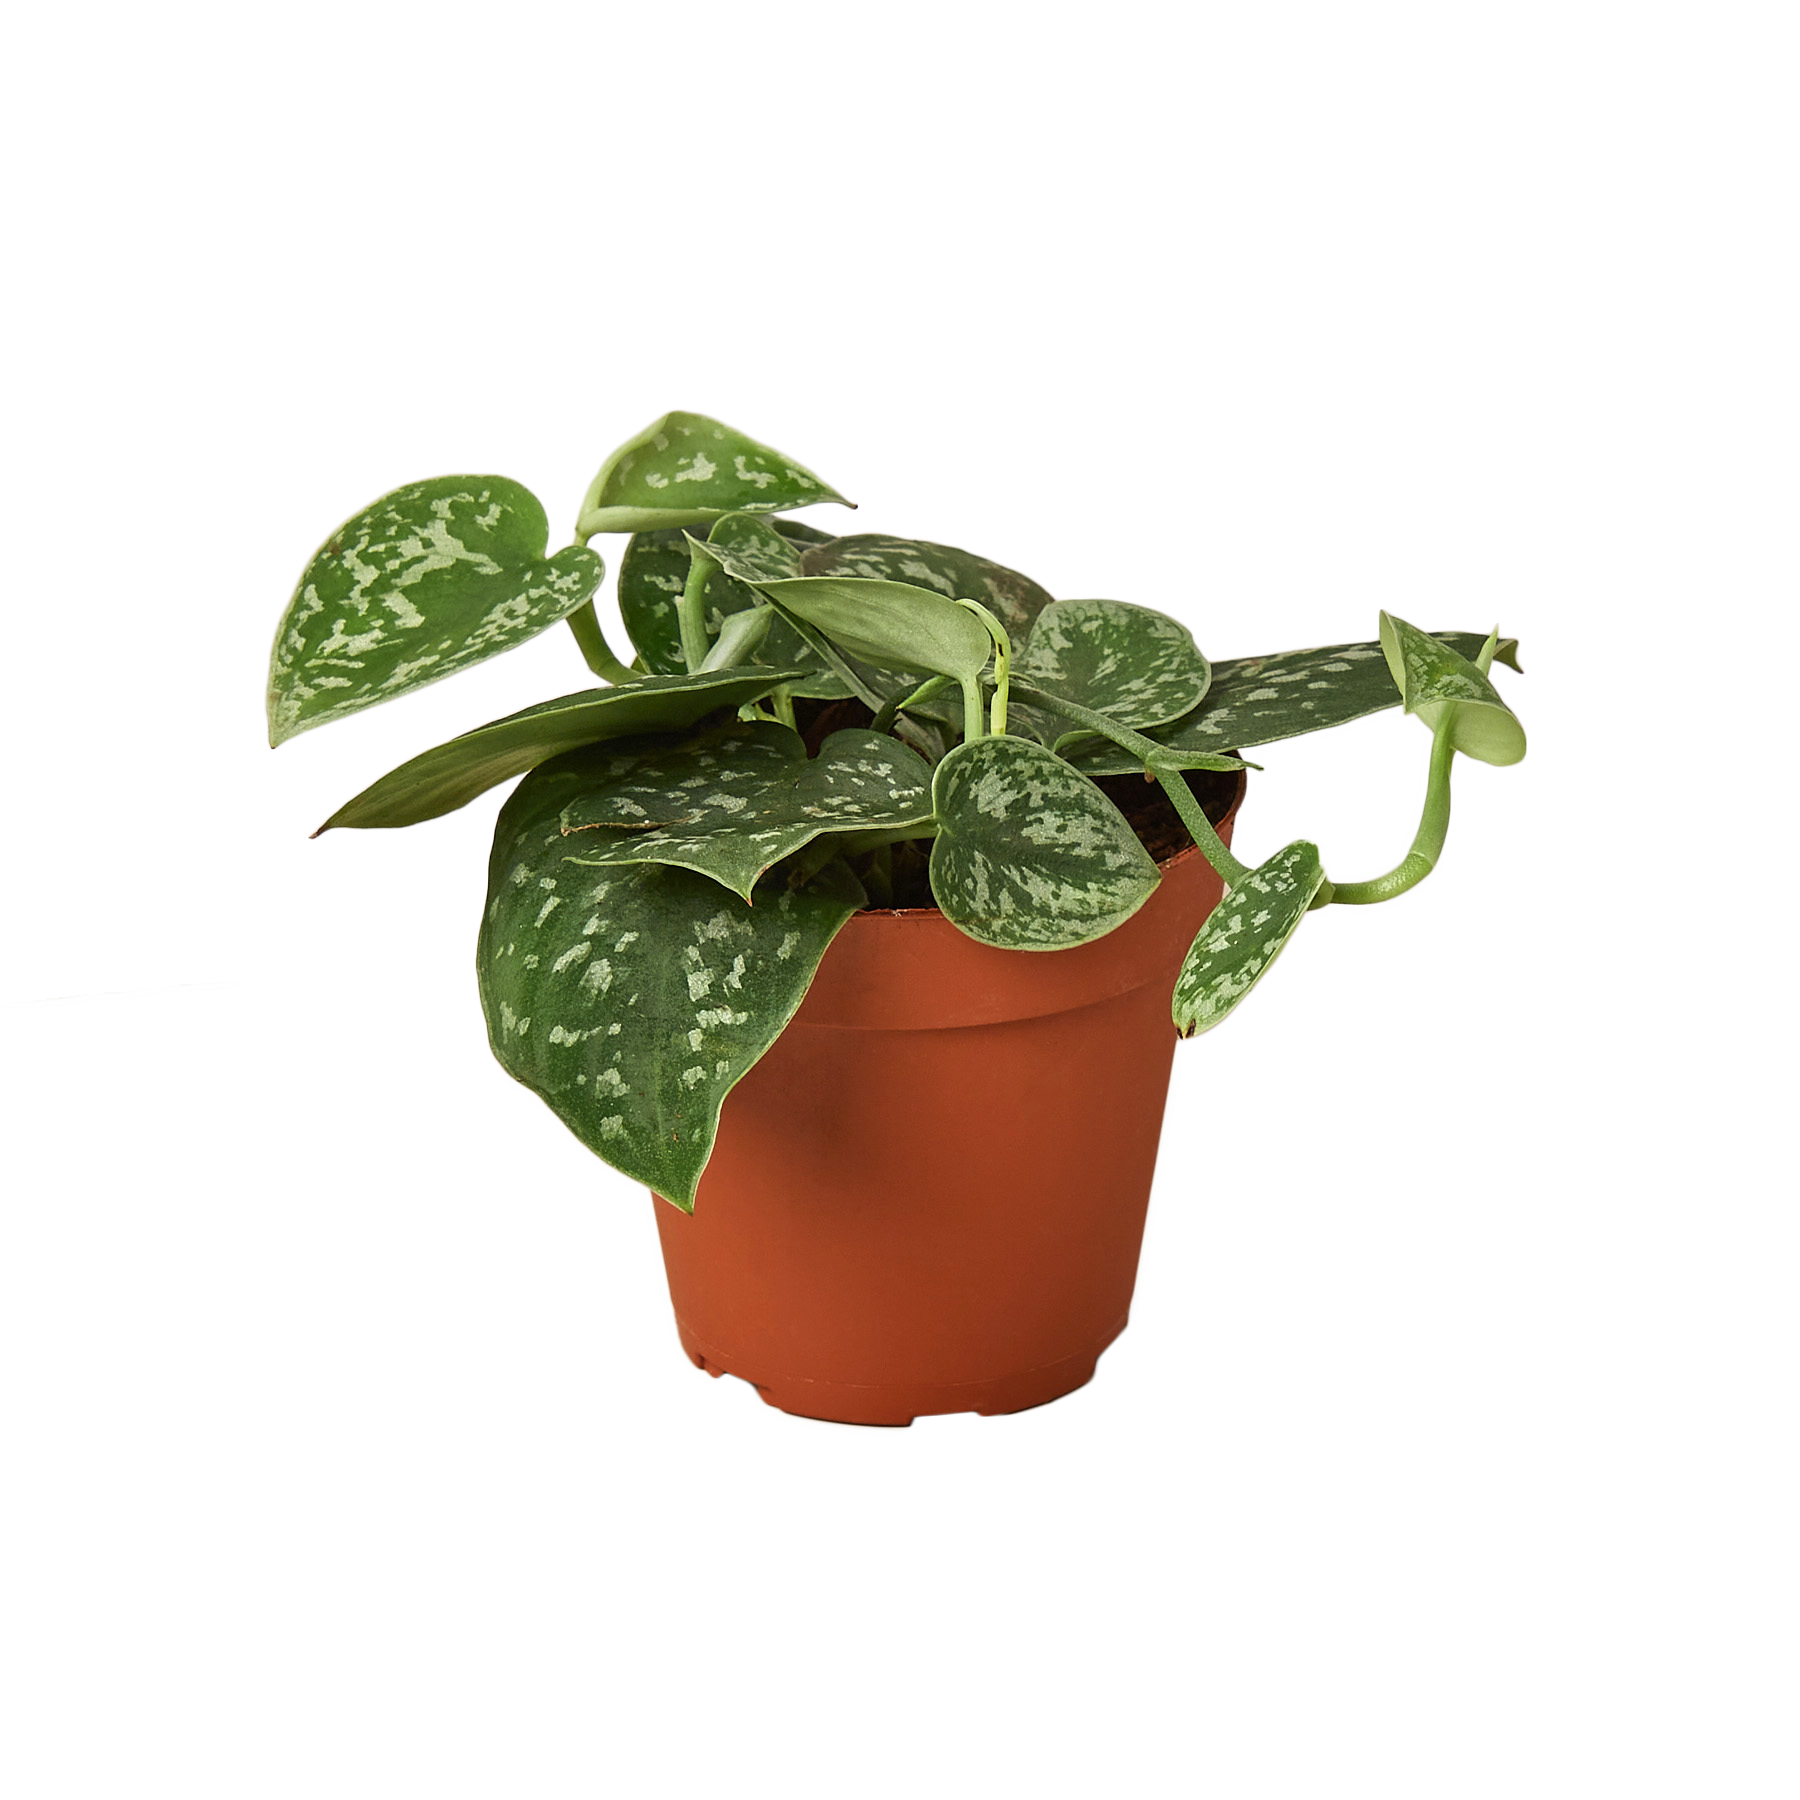 buy satin pothos online, plants for sale online, devils ivy for sale, buy houseplants online, buy pothos, green door garden